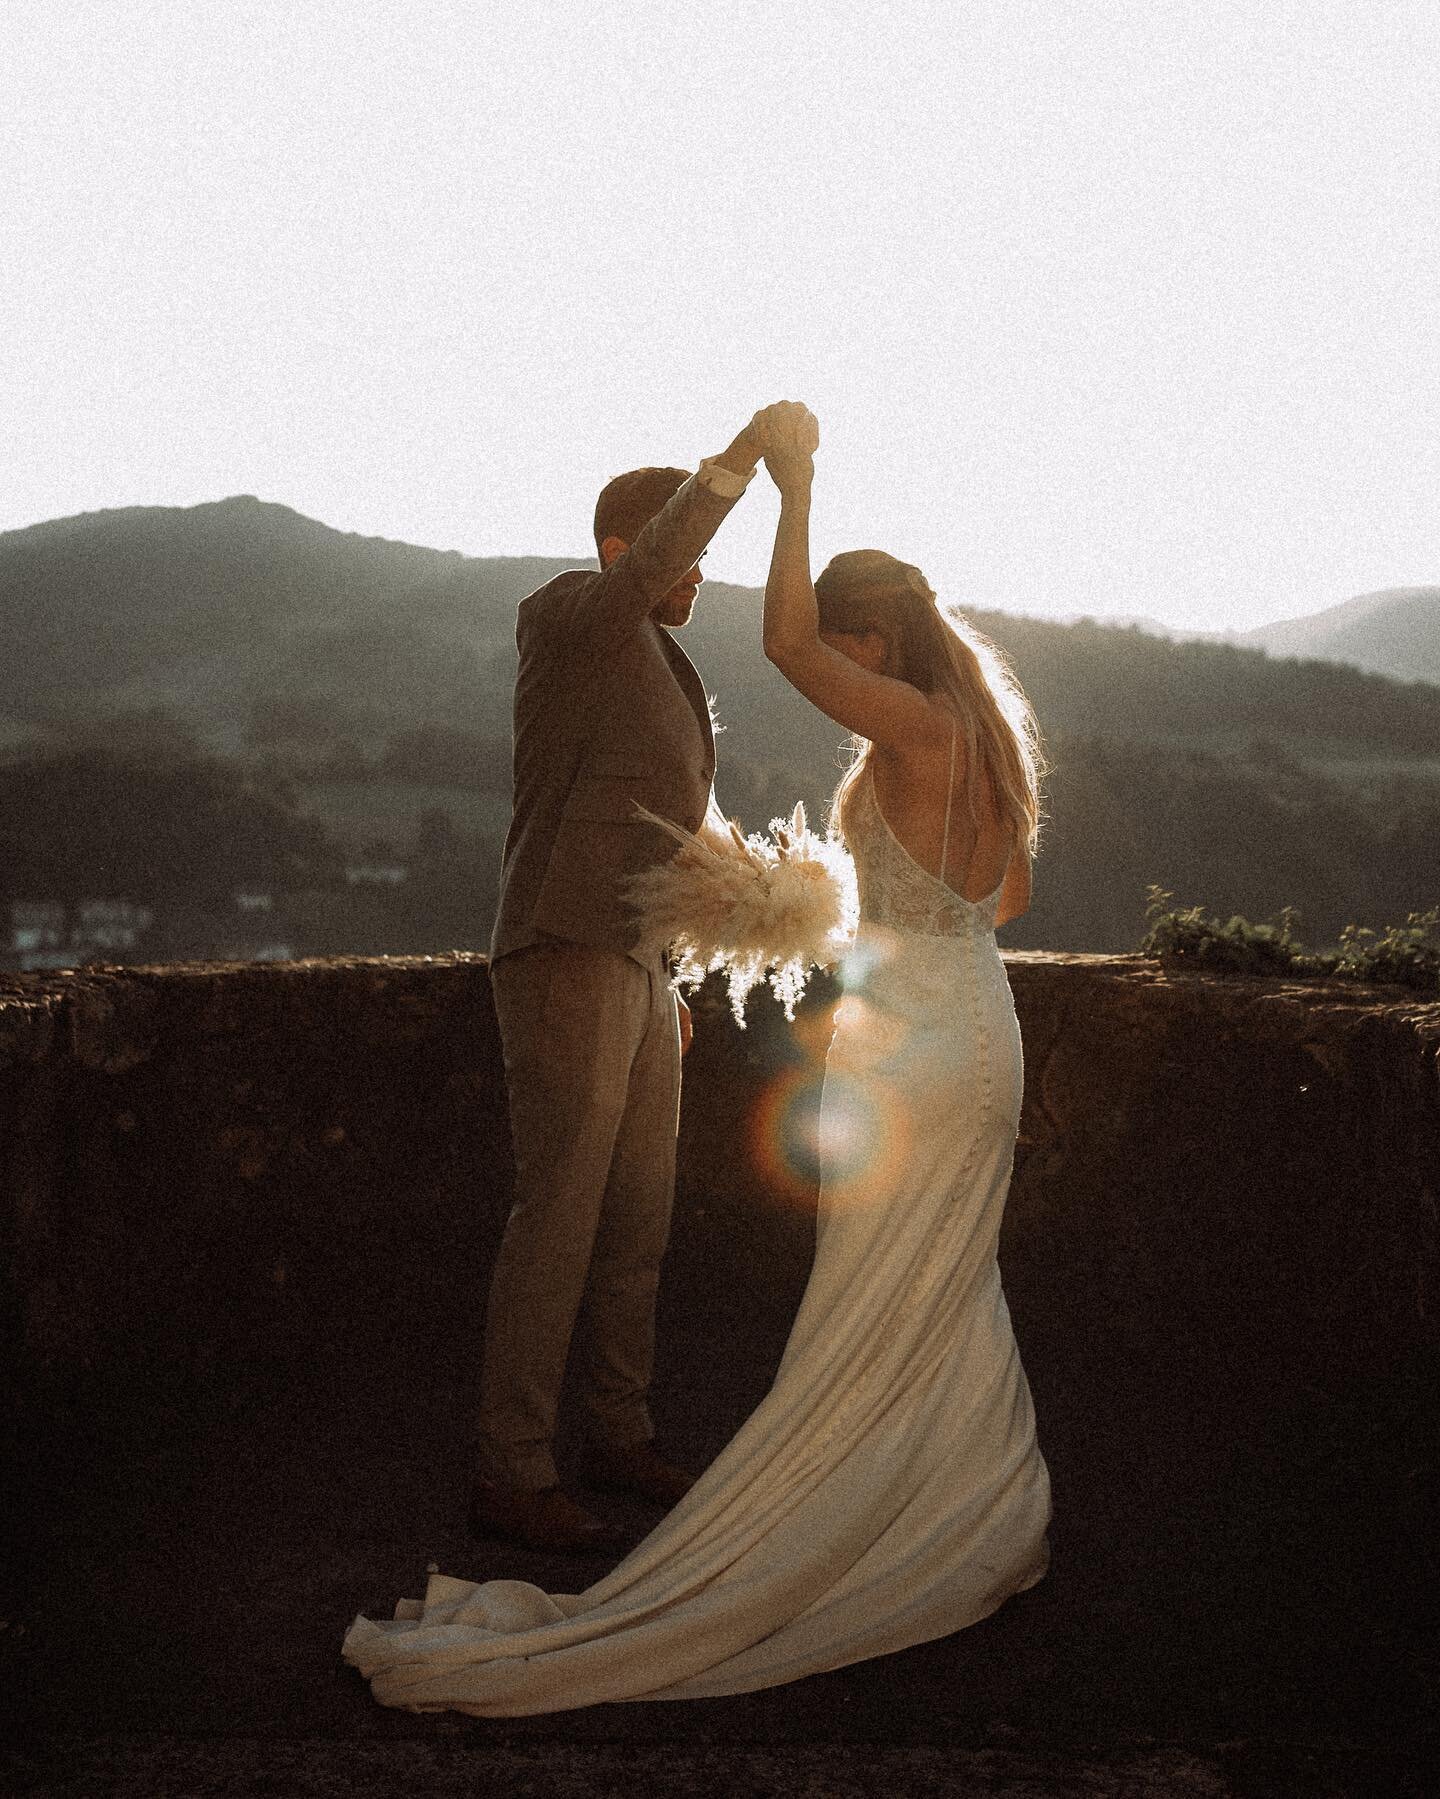 Wir finden, es lohnt sich, Zeiteinzuplanen f&uuml;r ein Sunset Shooting. 🤍 
Und dann noch ein paar andere Momente von dieser Hochzeit, einfach weils so sch&ouml;n war. 😍
.
.
.
#weddingphotography #weddingsinswitzerland #weddinginspiration #weddings